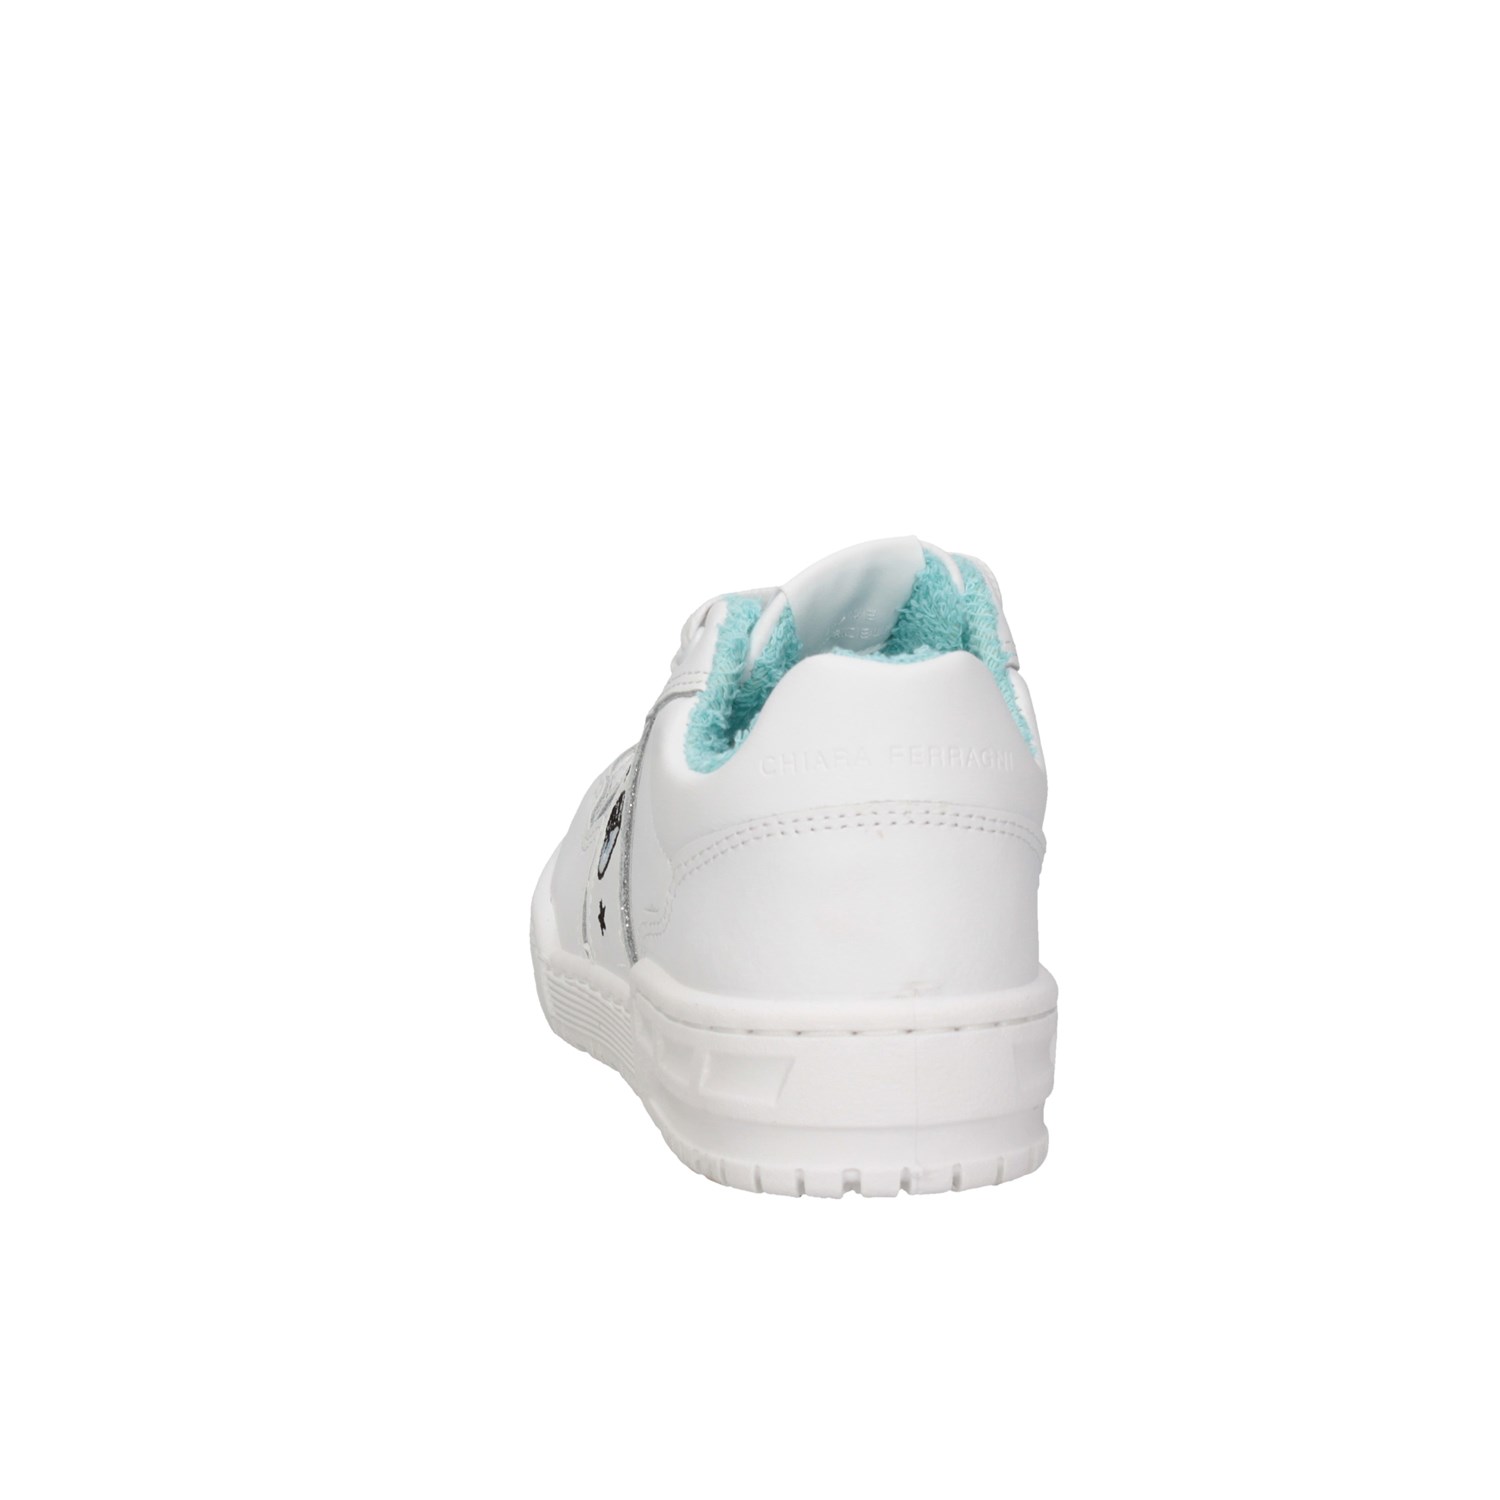 CHIARA FERRAGNI CFB151 White Shoes Child 